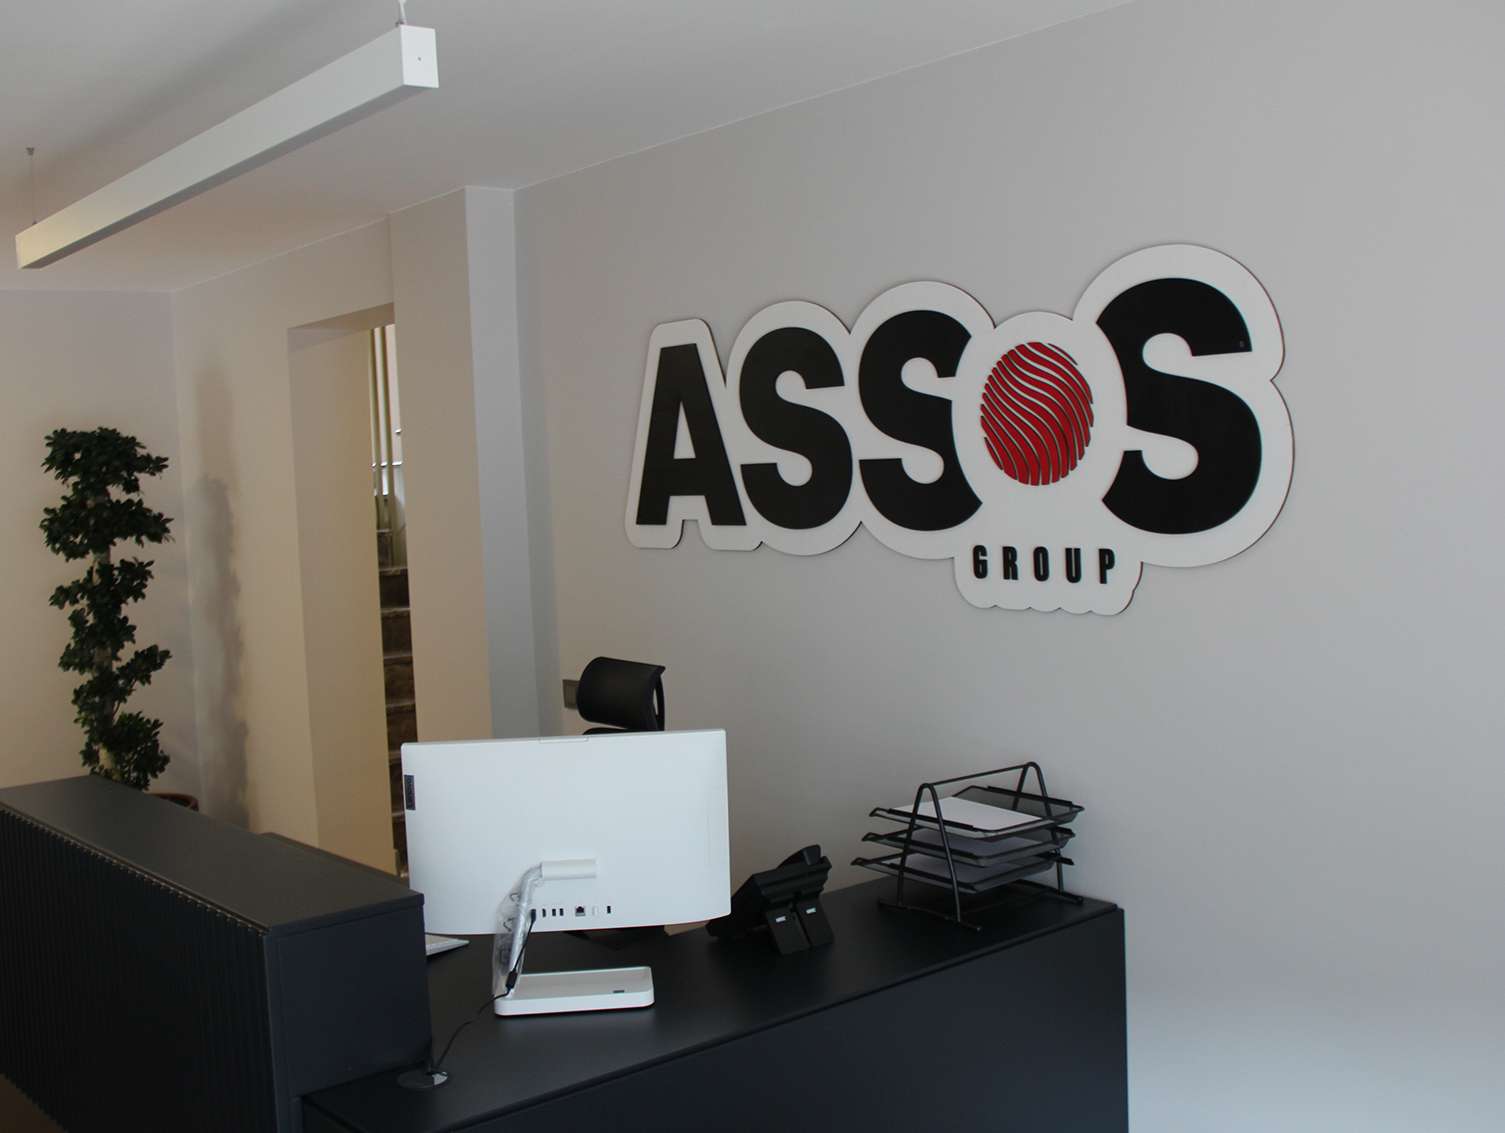 Assos Group